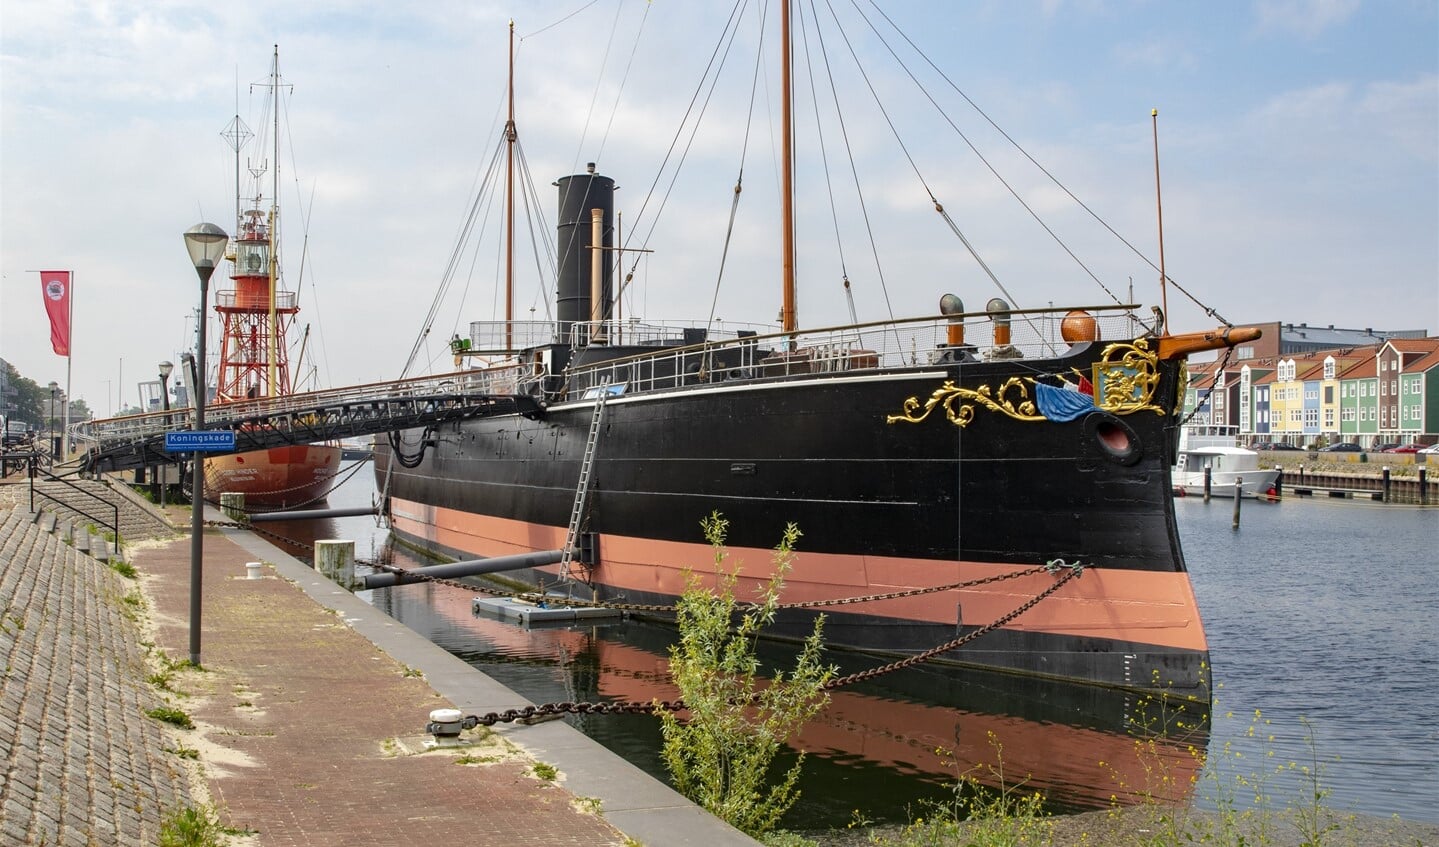 De Buffel was ooit bedoeld voor de verdediging van de Nederlandse kustwateren. Nu siert het schip de Koningskade. 